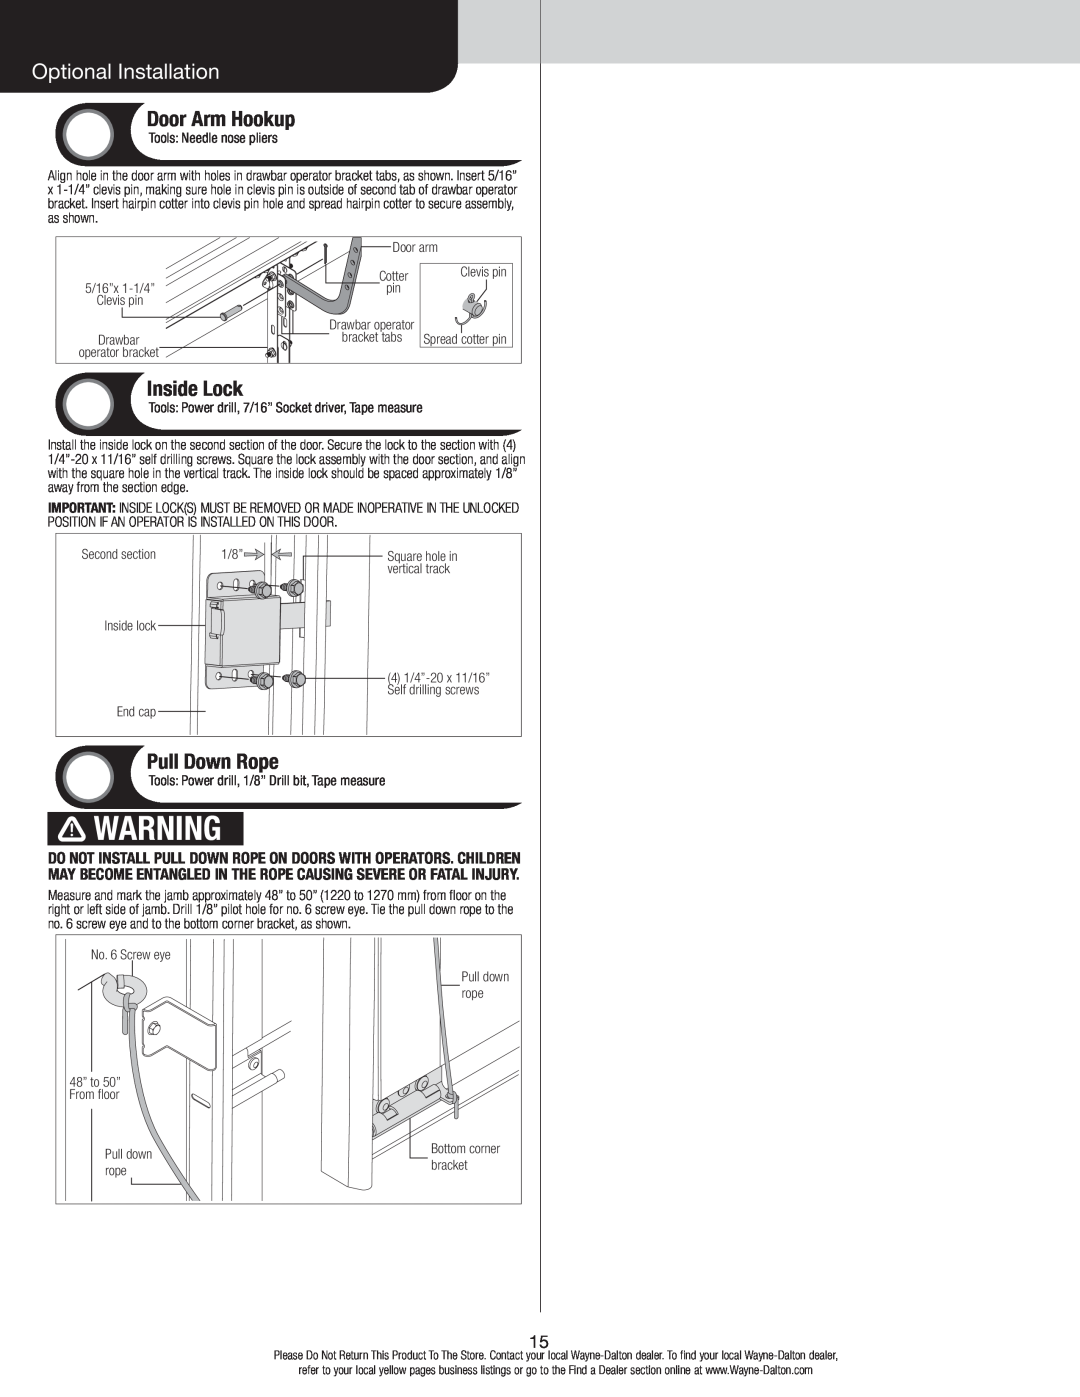 Wayne-Dalton 346919 installation instructions Optional Installation, Door Arm Hookup, Inside Lock, Pull Down Rope 